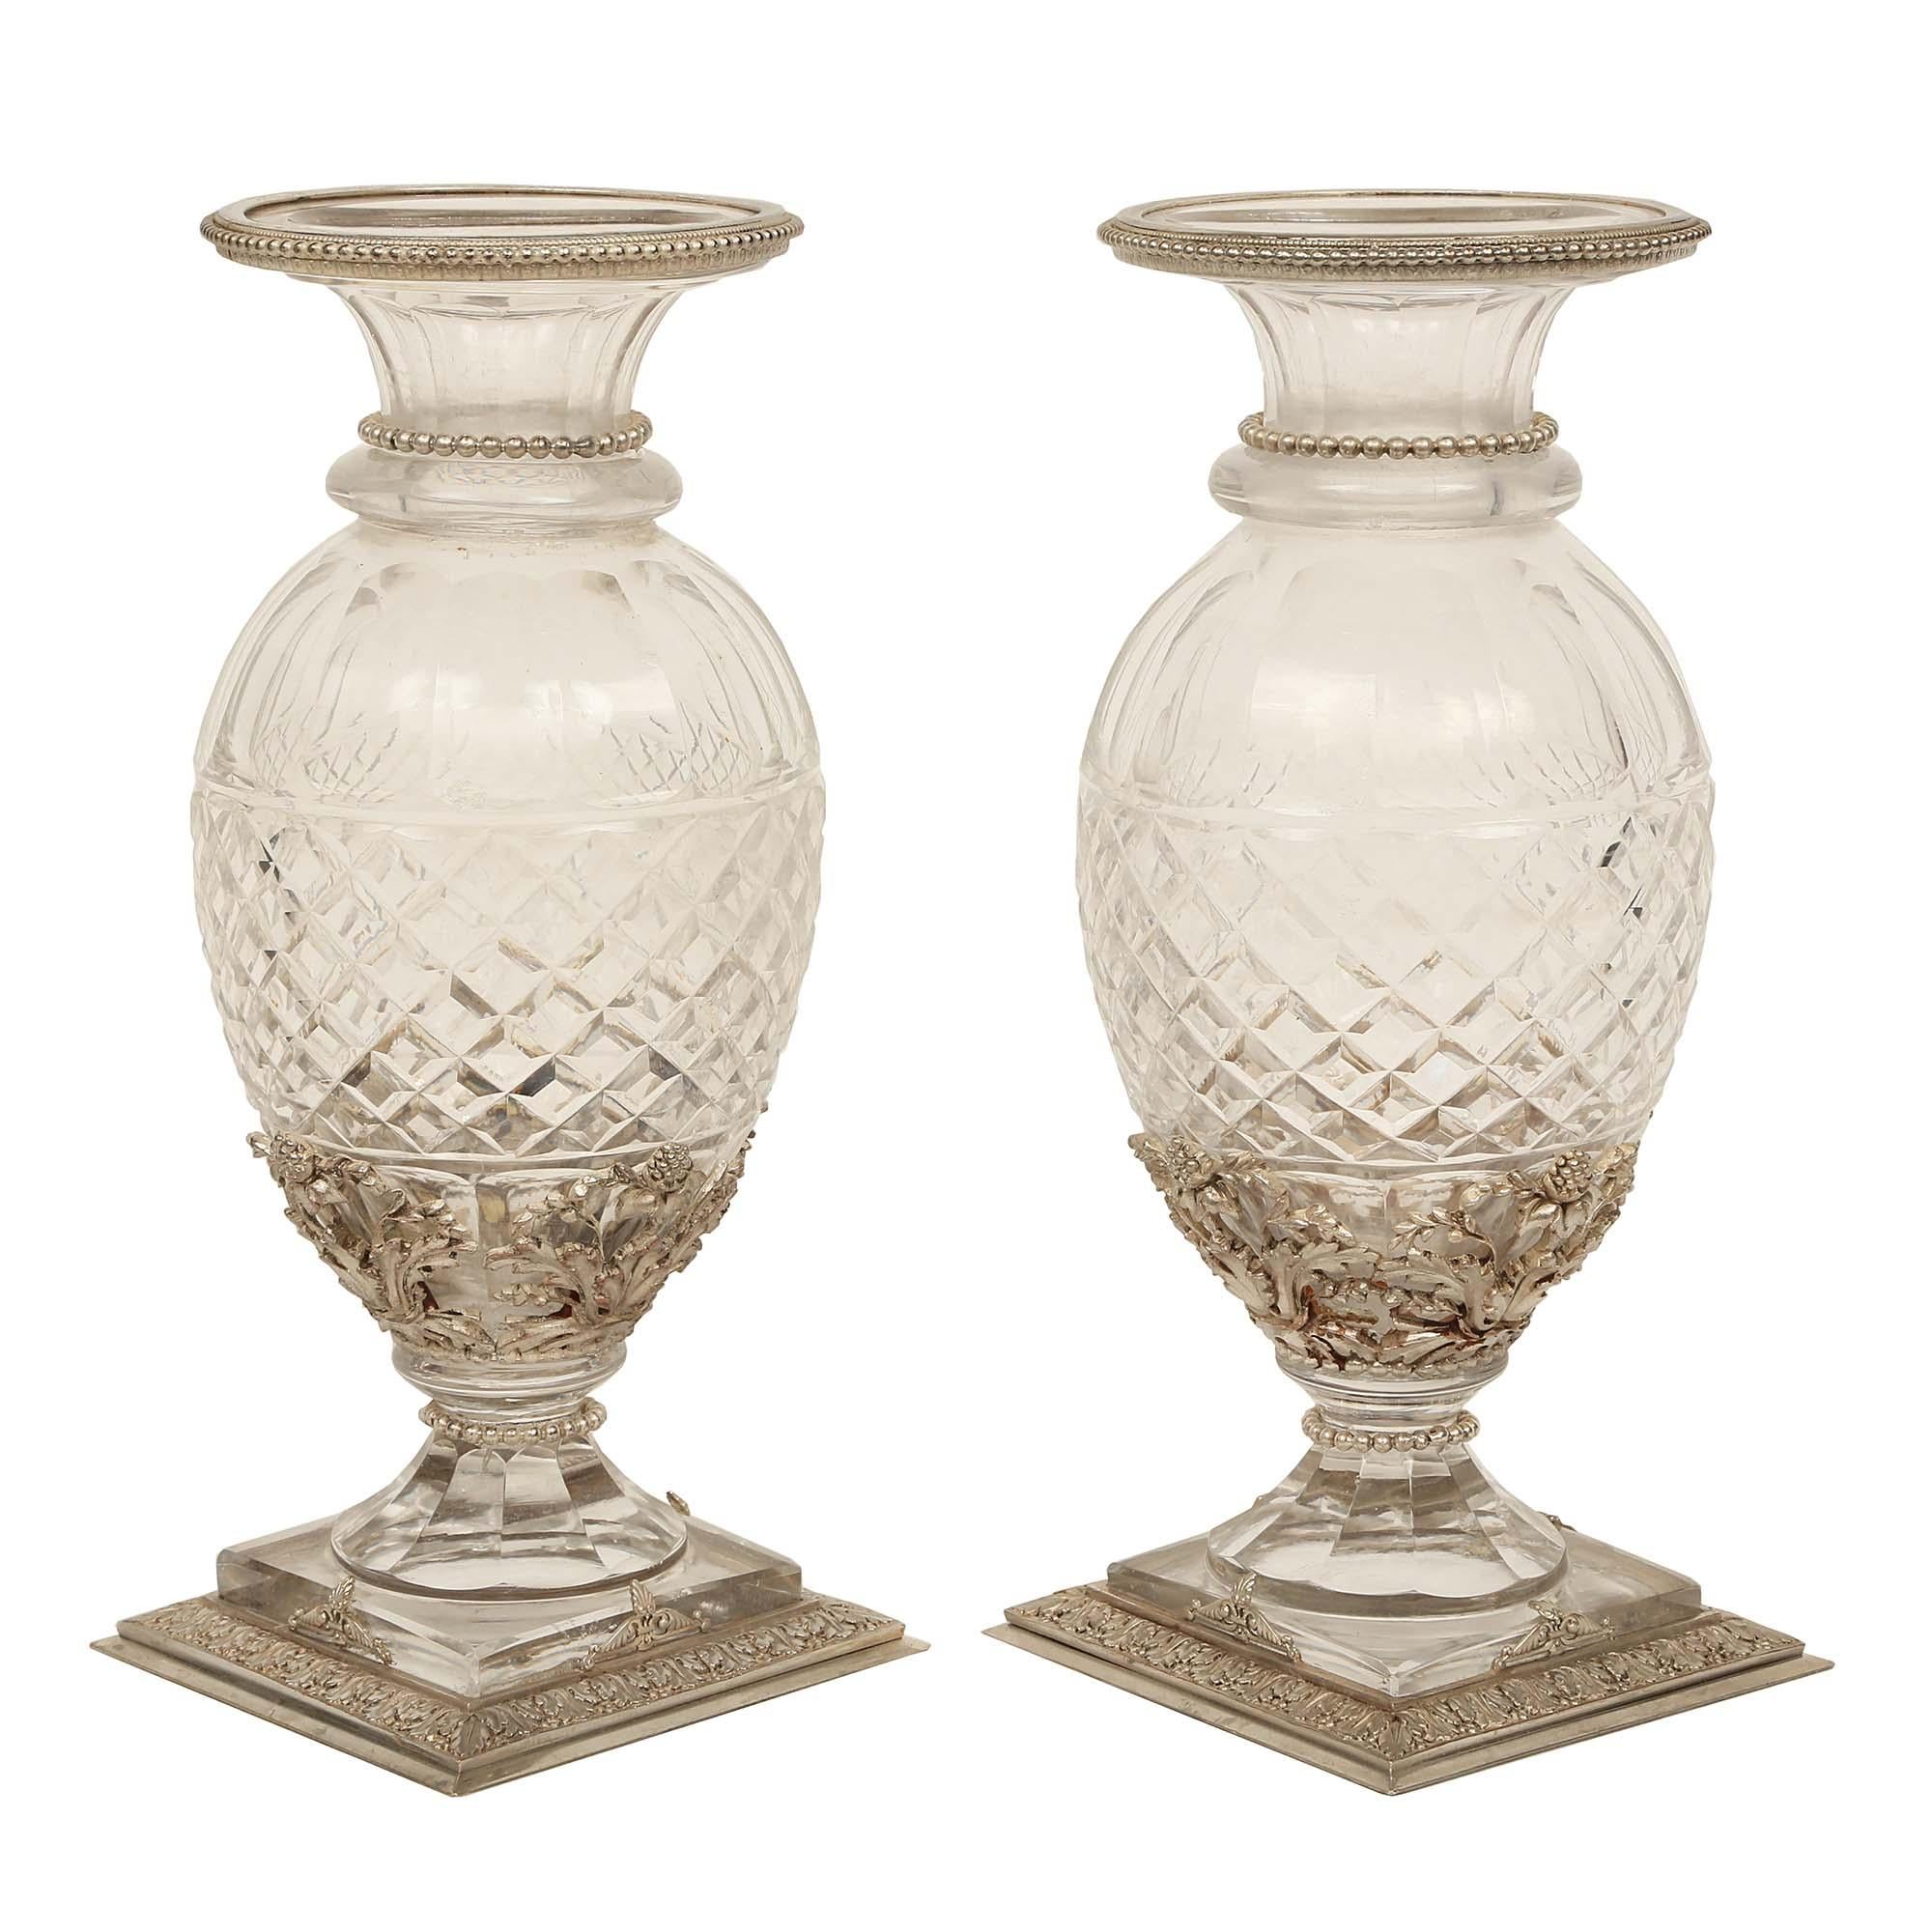 Ein elegantes Paar französischer Vasen aus geschliffenem Baccarat-Kristall und versilberter Bronze aus dem Louis XVI Jahrhundert. Jede Vase steht auf einem ziselierten quadratischen Sockel aus versilberter Bronze, der mit ziselierten